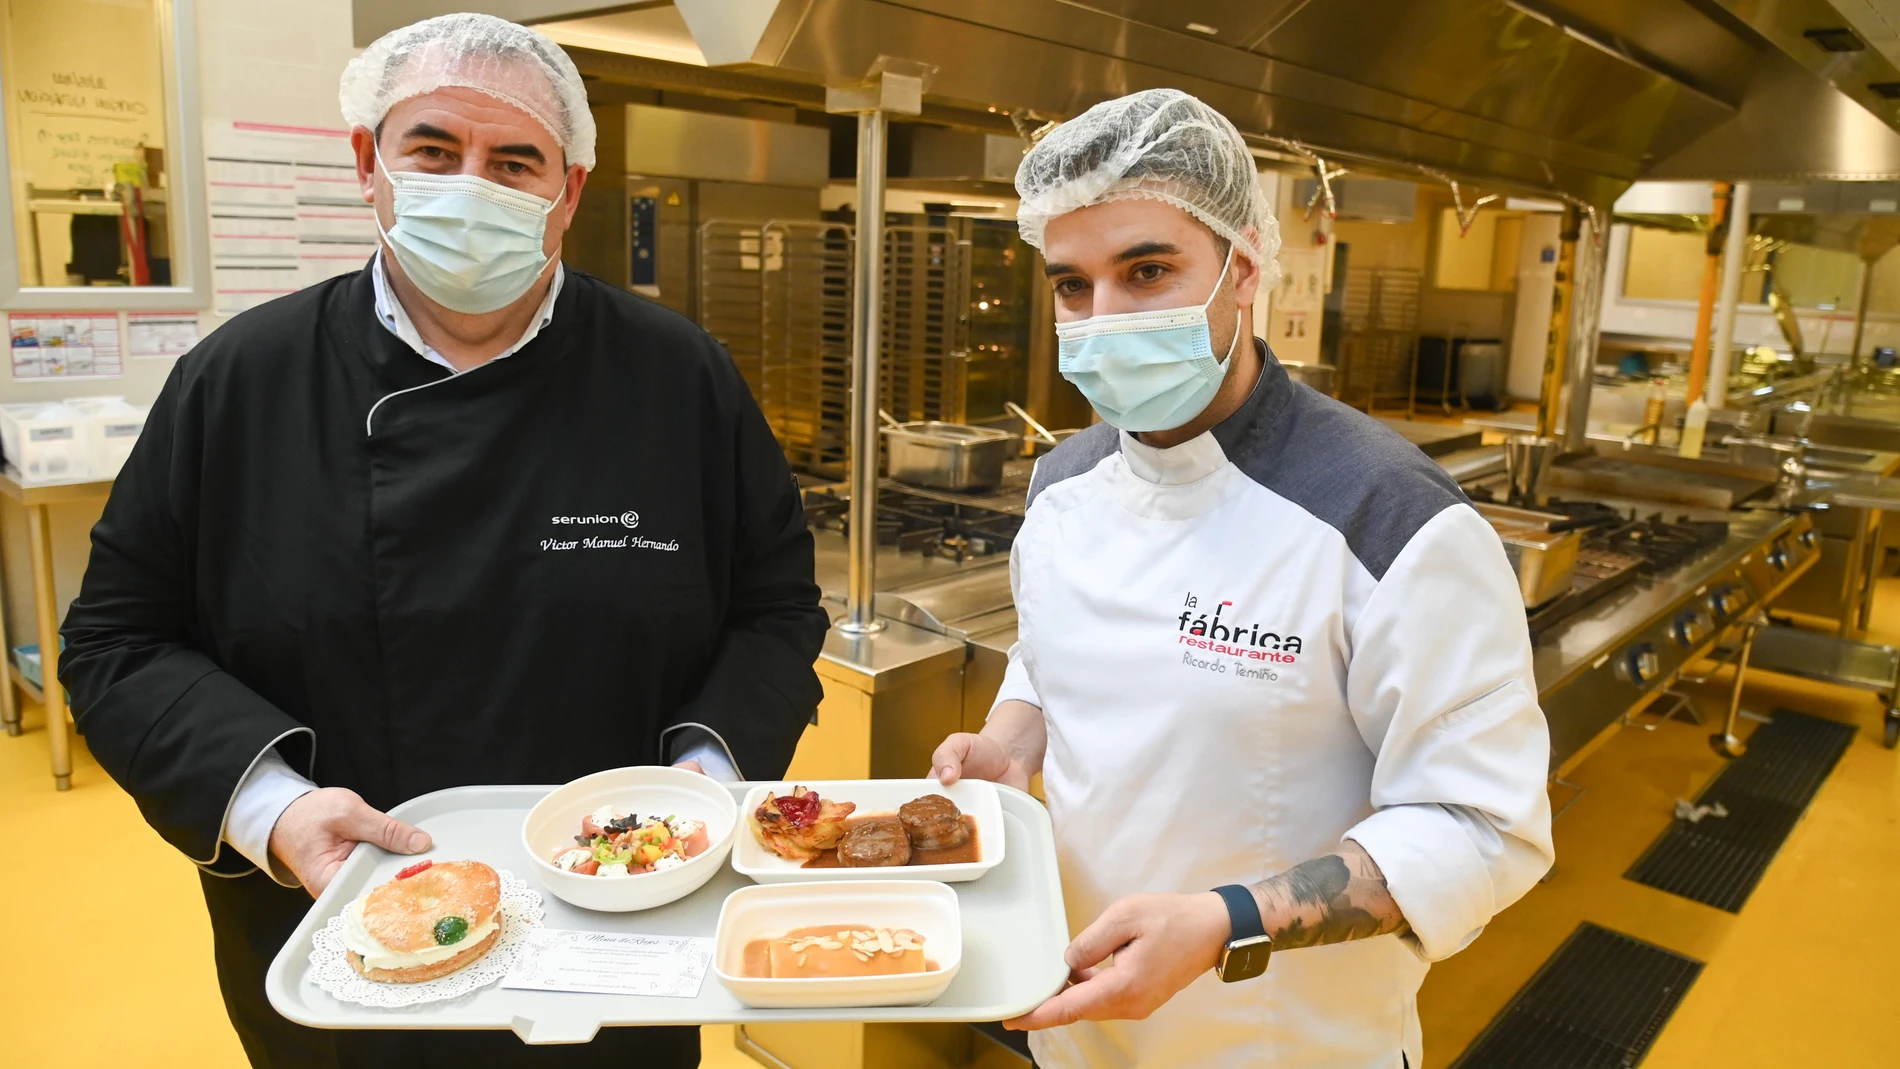 El chef del restaurante "La Fábrica", Ricardo Temiño, diseña y prepara en las cocinas del Hospital Universitario de Burgos (HUBU) un menú especial navideño para los pacientes ingresados